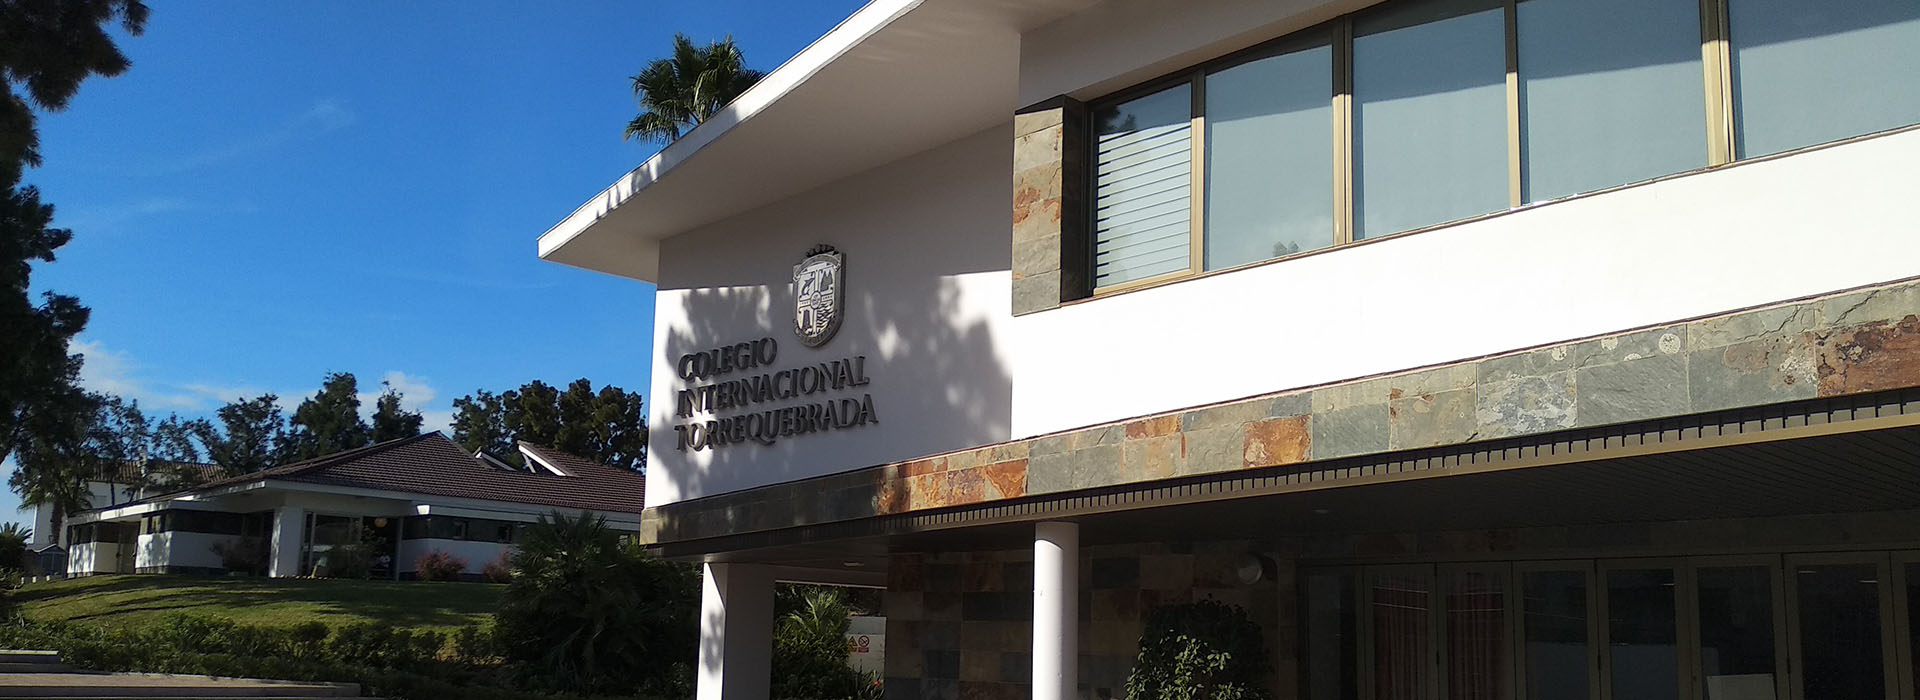 Colegio Internacional Torrequebrada